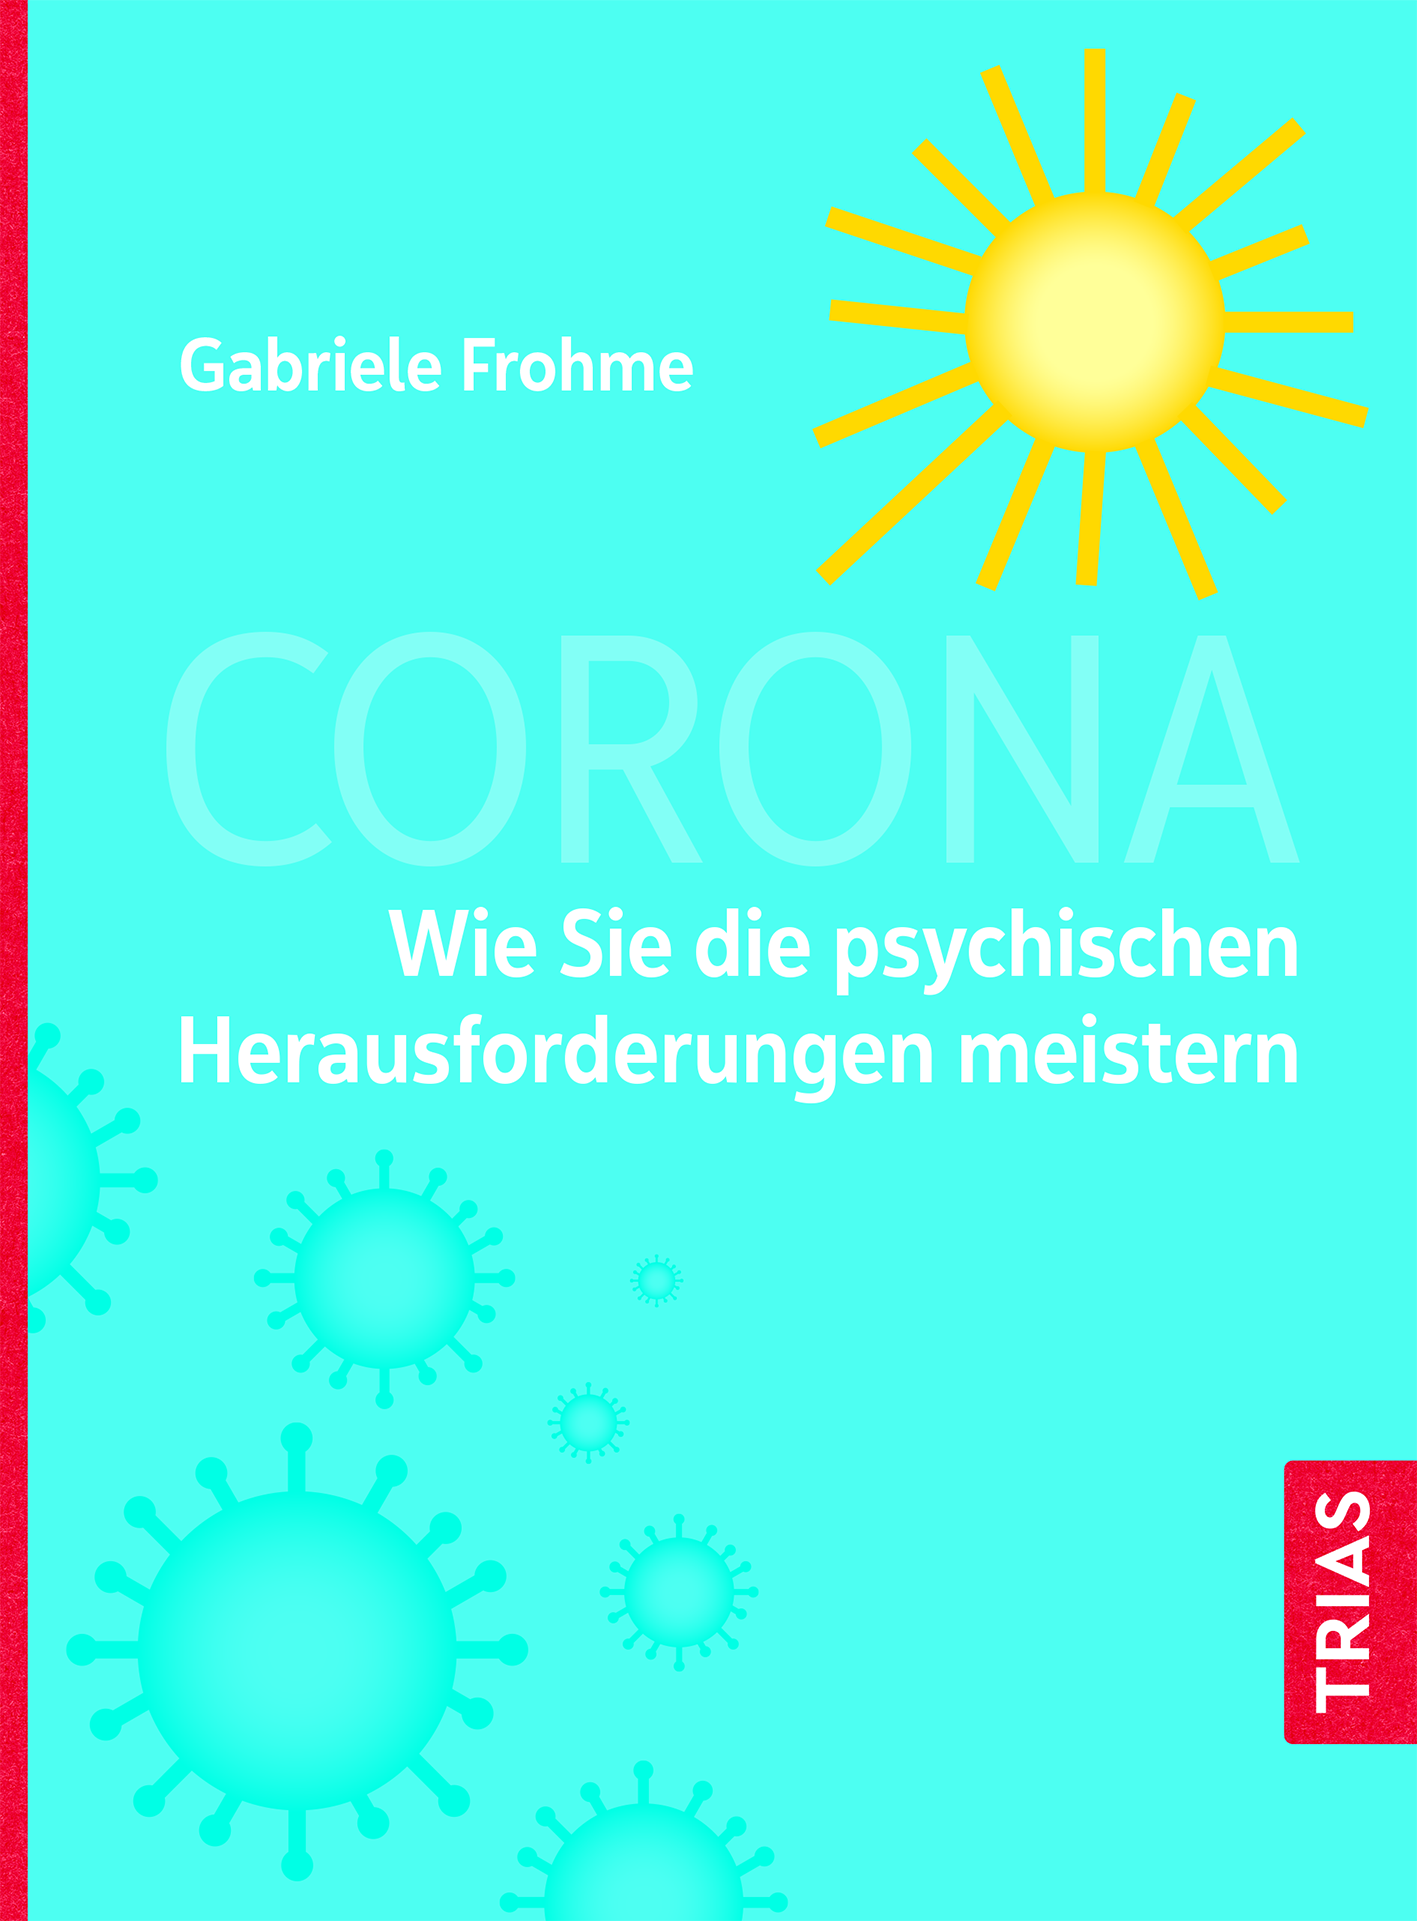 Buchcover Corona, trias-Verlag